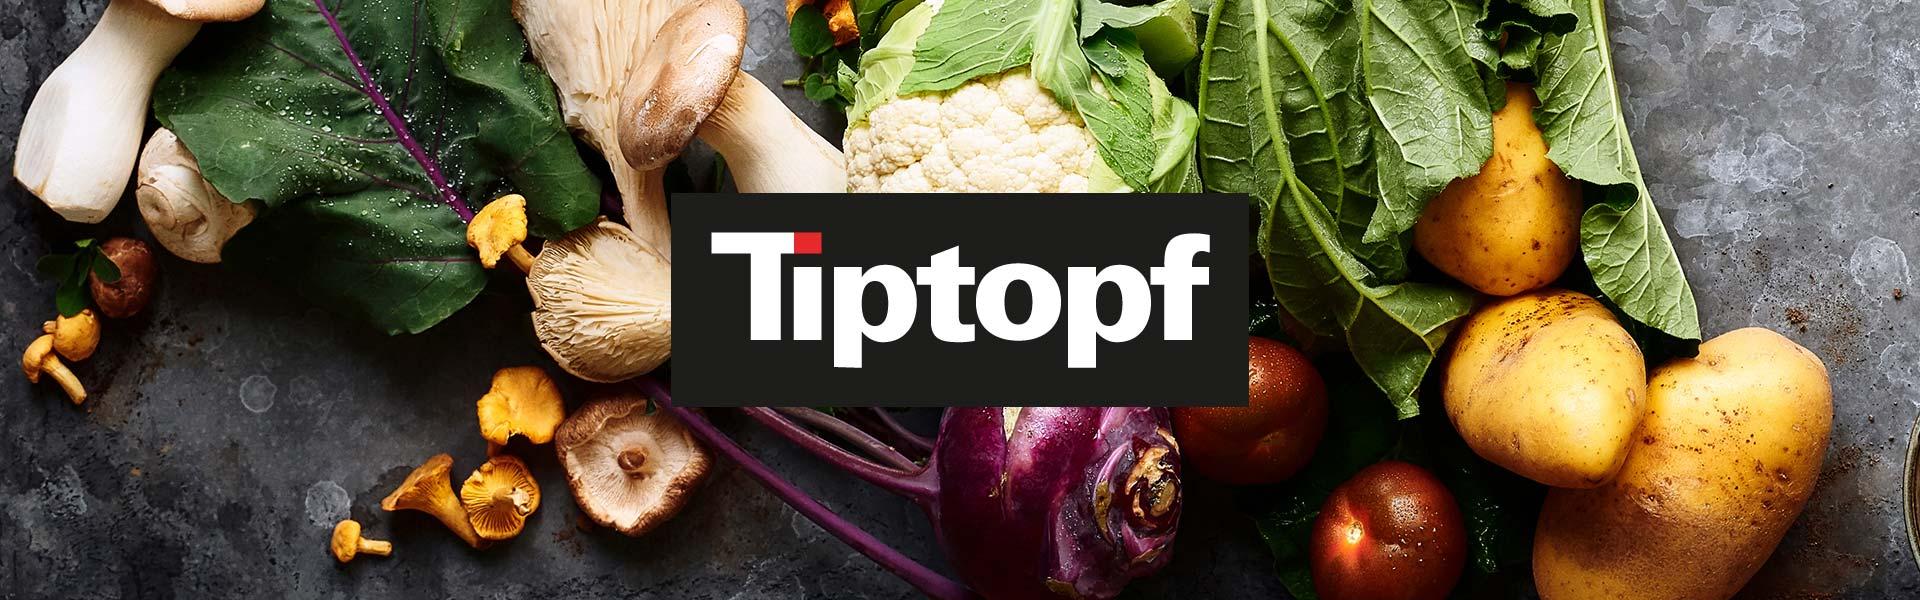 Frisch gewaschenes Gemüse, Kohlblätter, Kartoffeln, Blumenkohl und verschiedene Pilze. Mit Logo „Tiptopf“